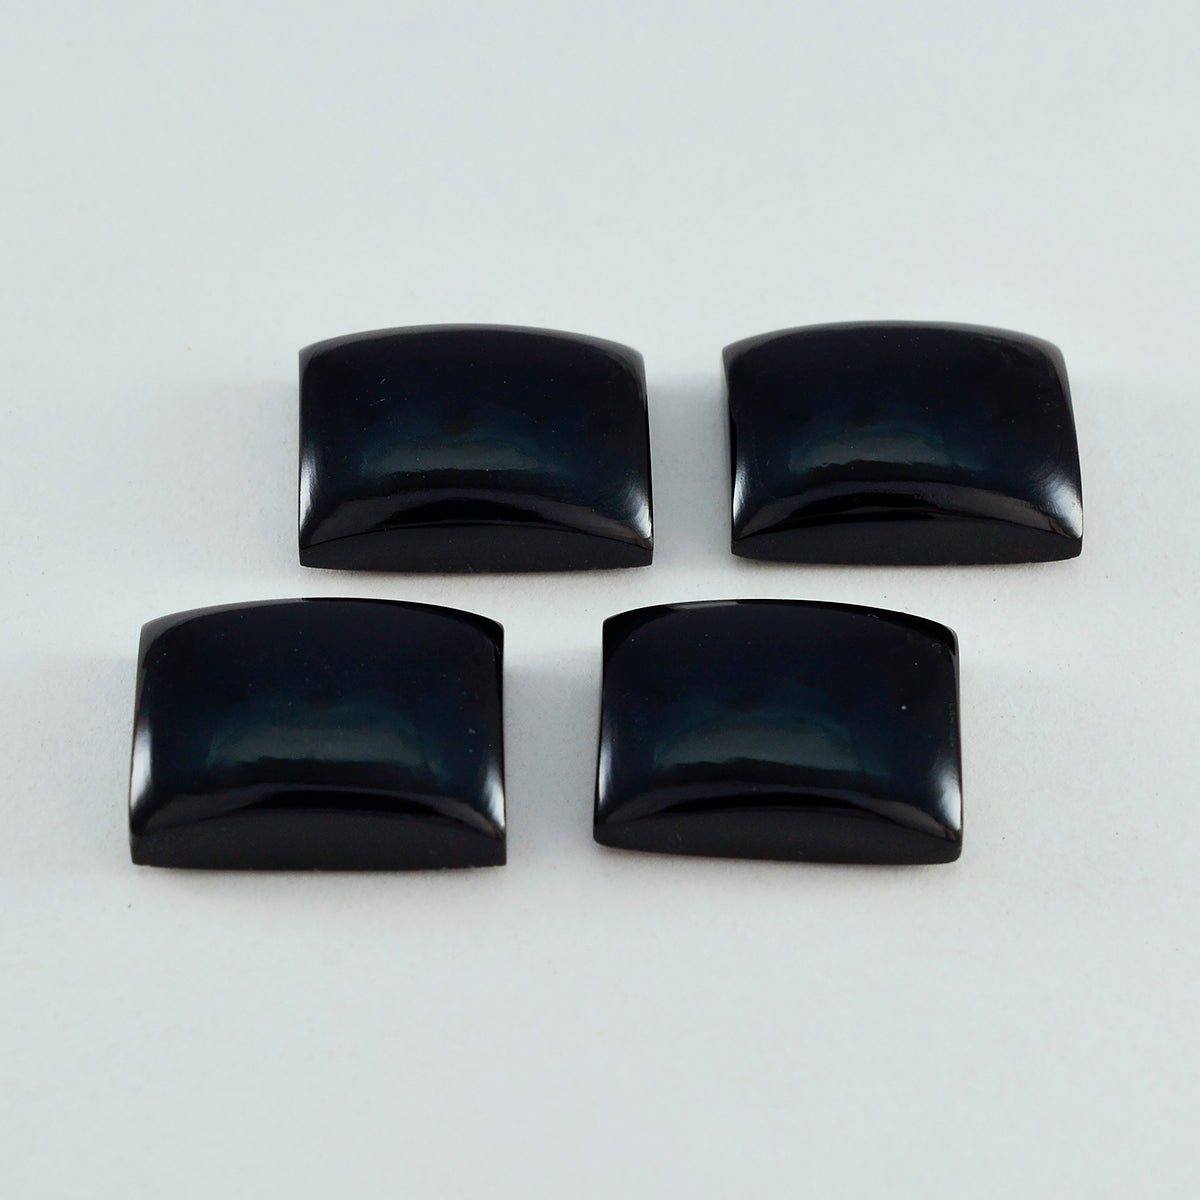 Riyogems 1 pieza cabujón de ónix negro 4x4mm forma de corazón gema suelta de calidad fantástica